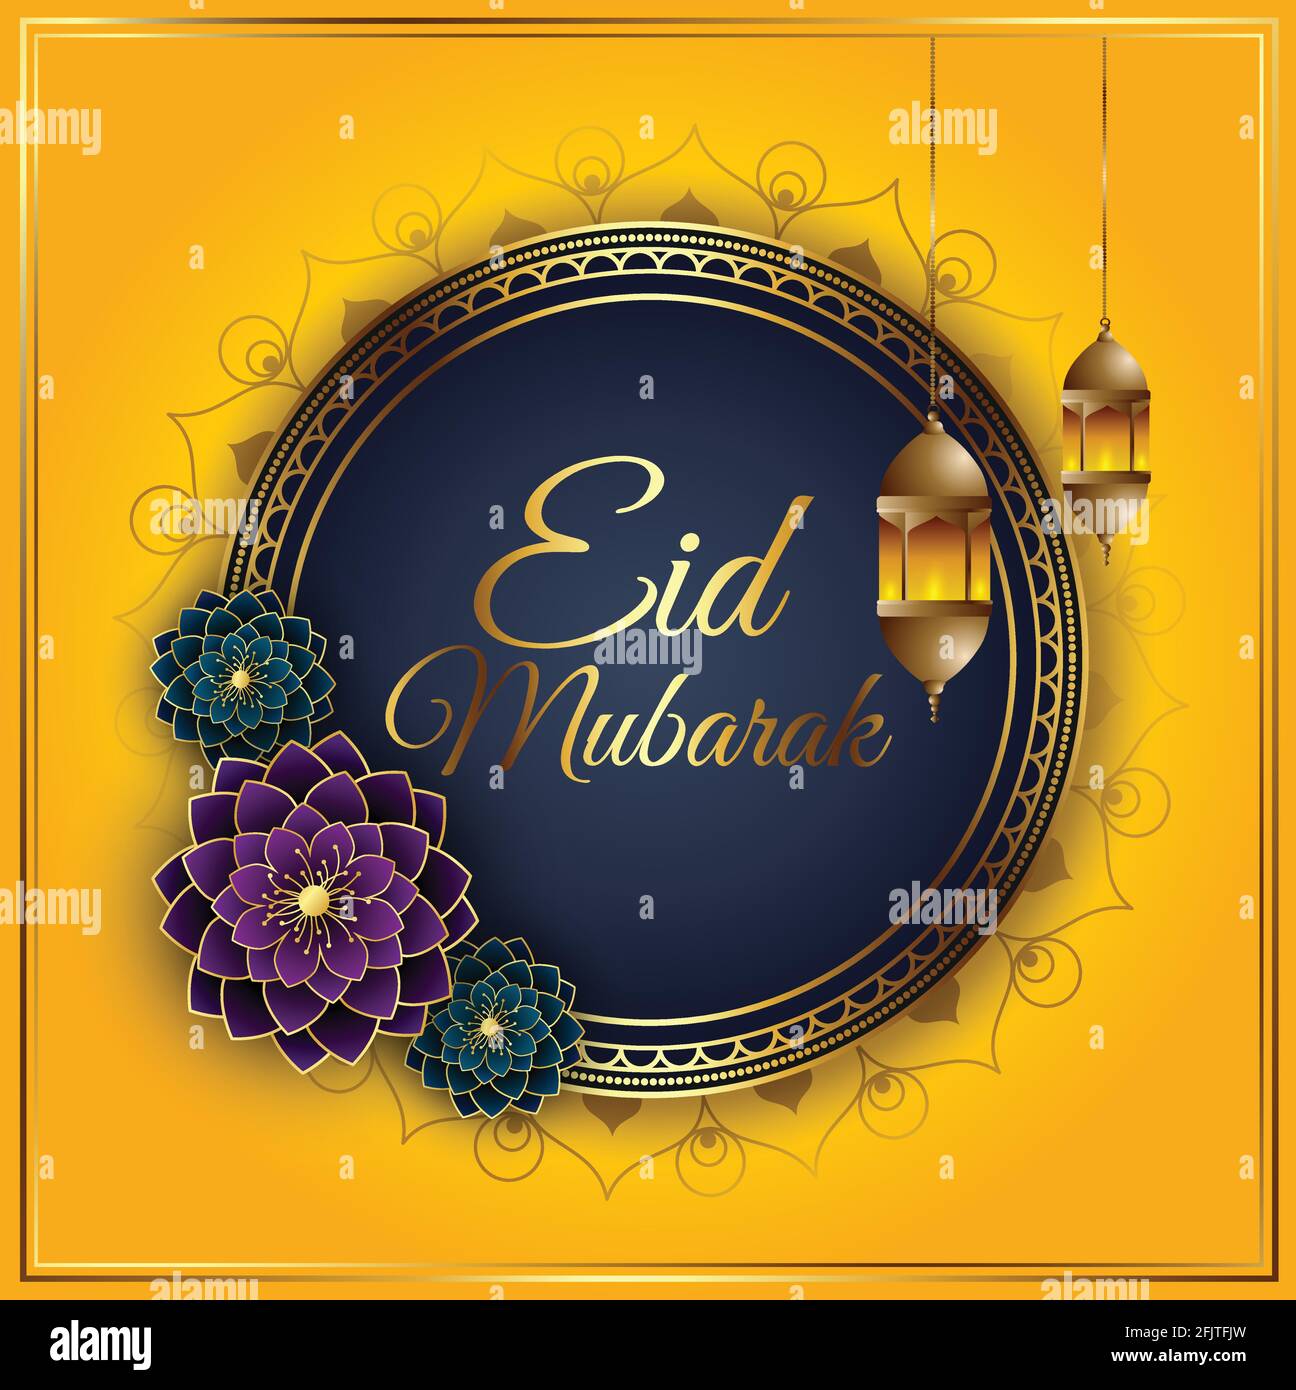 Thỏa thích sáng tạo với nền vector Lễ Eid Festival và banner Eid Mubarak thật tuyệt vời! Bữa tiệc trang trí đầy màu sắc và những hoạt động thú vị là lời xin chào tuyệt vời cho Lễ Eid Mubarak này. Đổi mới không khí cho bất kỳ buổi tản bộ thoải mái nào bằng cách nhấp vào hình ảnh để khám phá thêm!